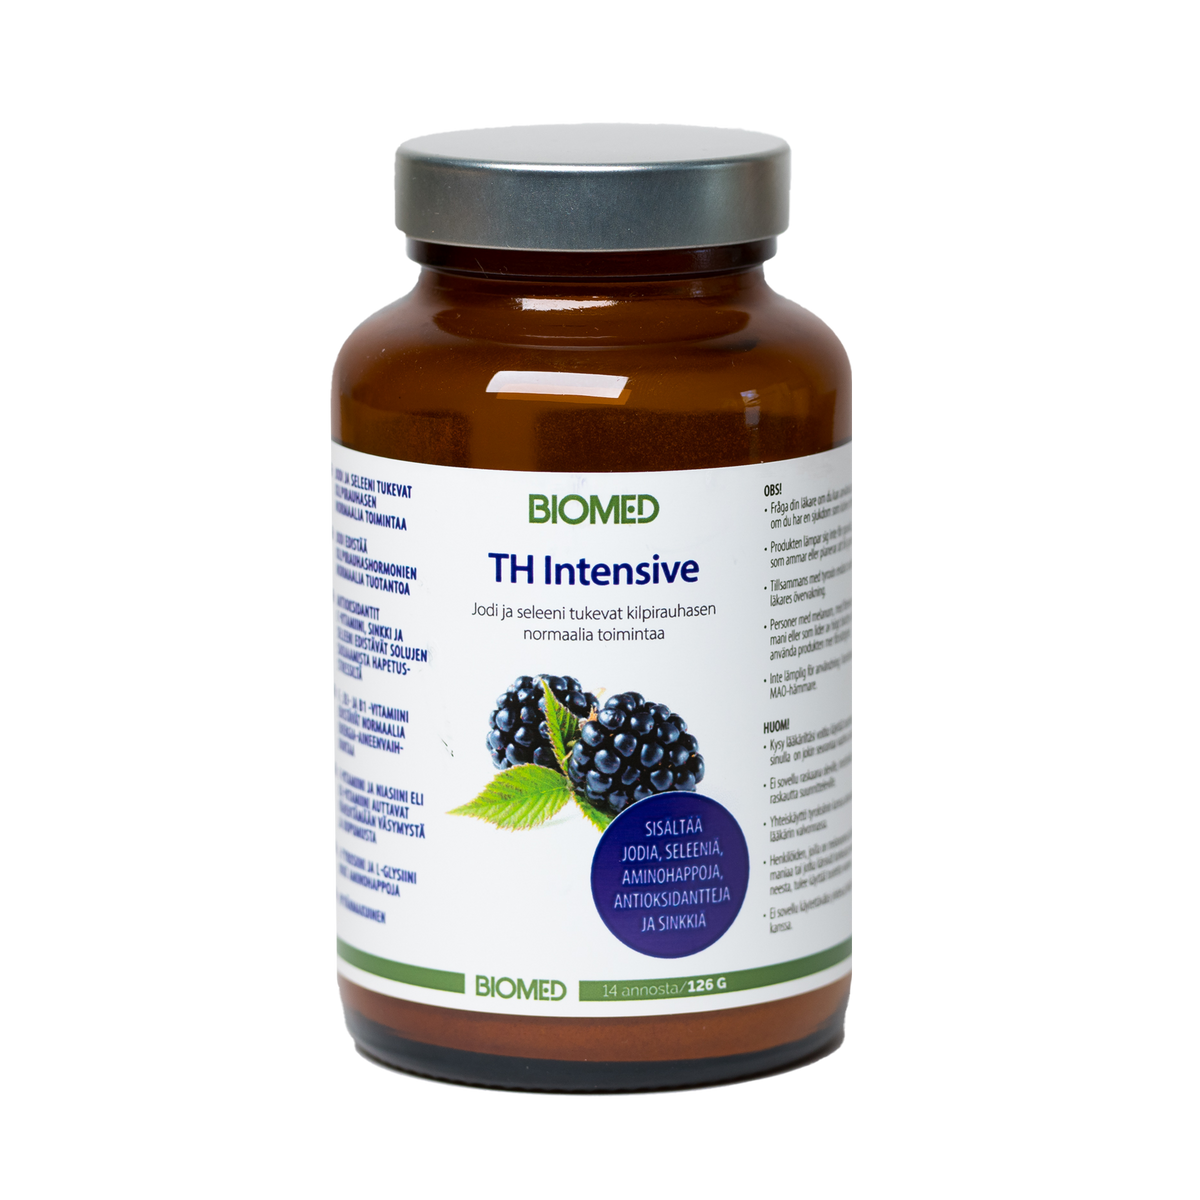 Biomed TH Intensive 126 g - RAVINTOLISÄ - Ravinnon täydentämiseen